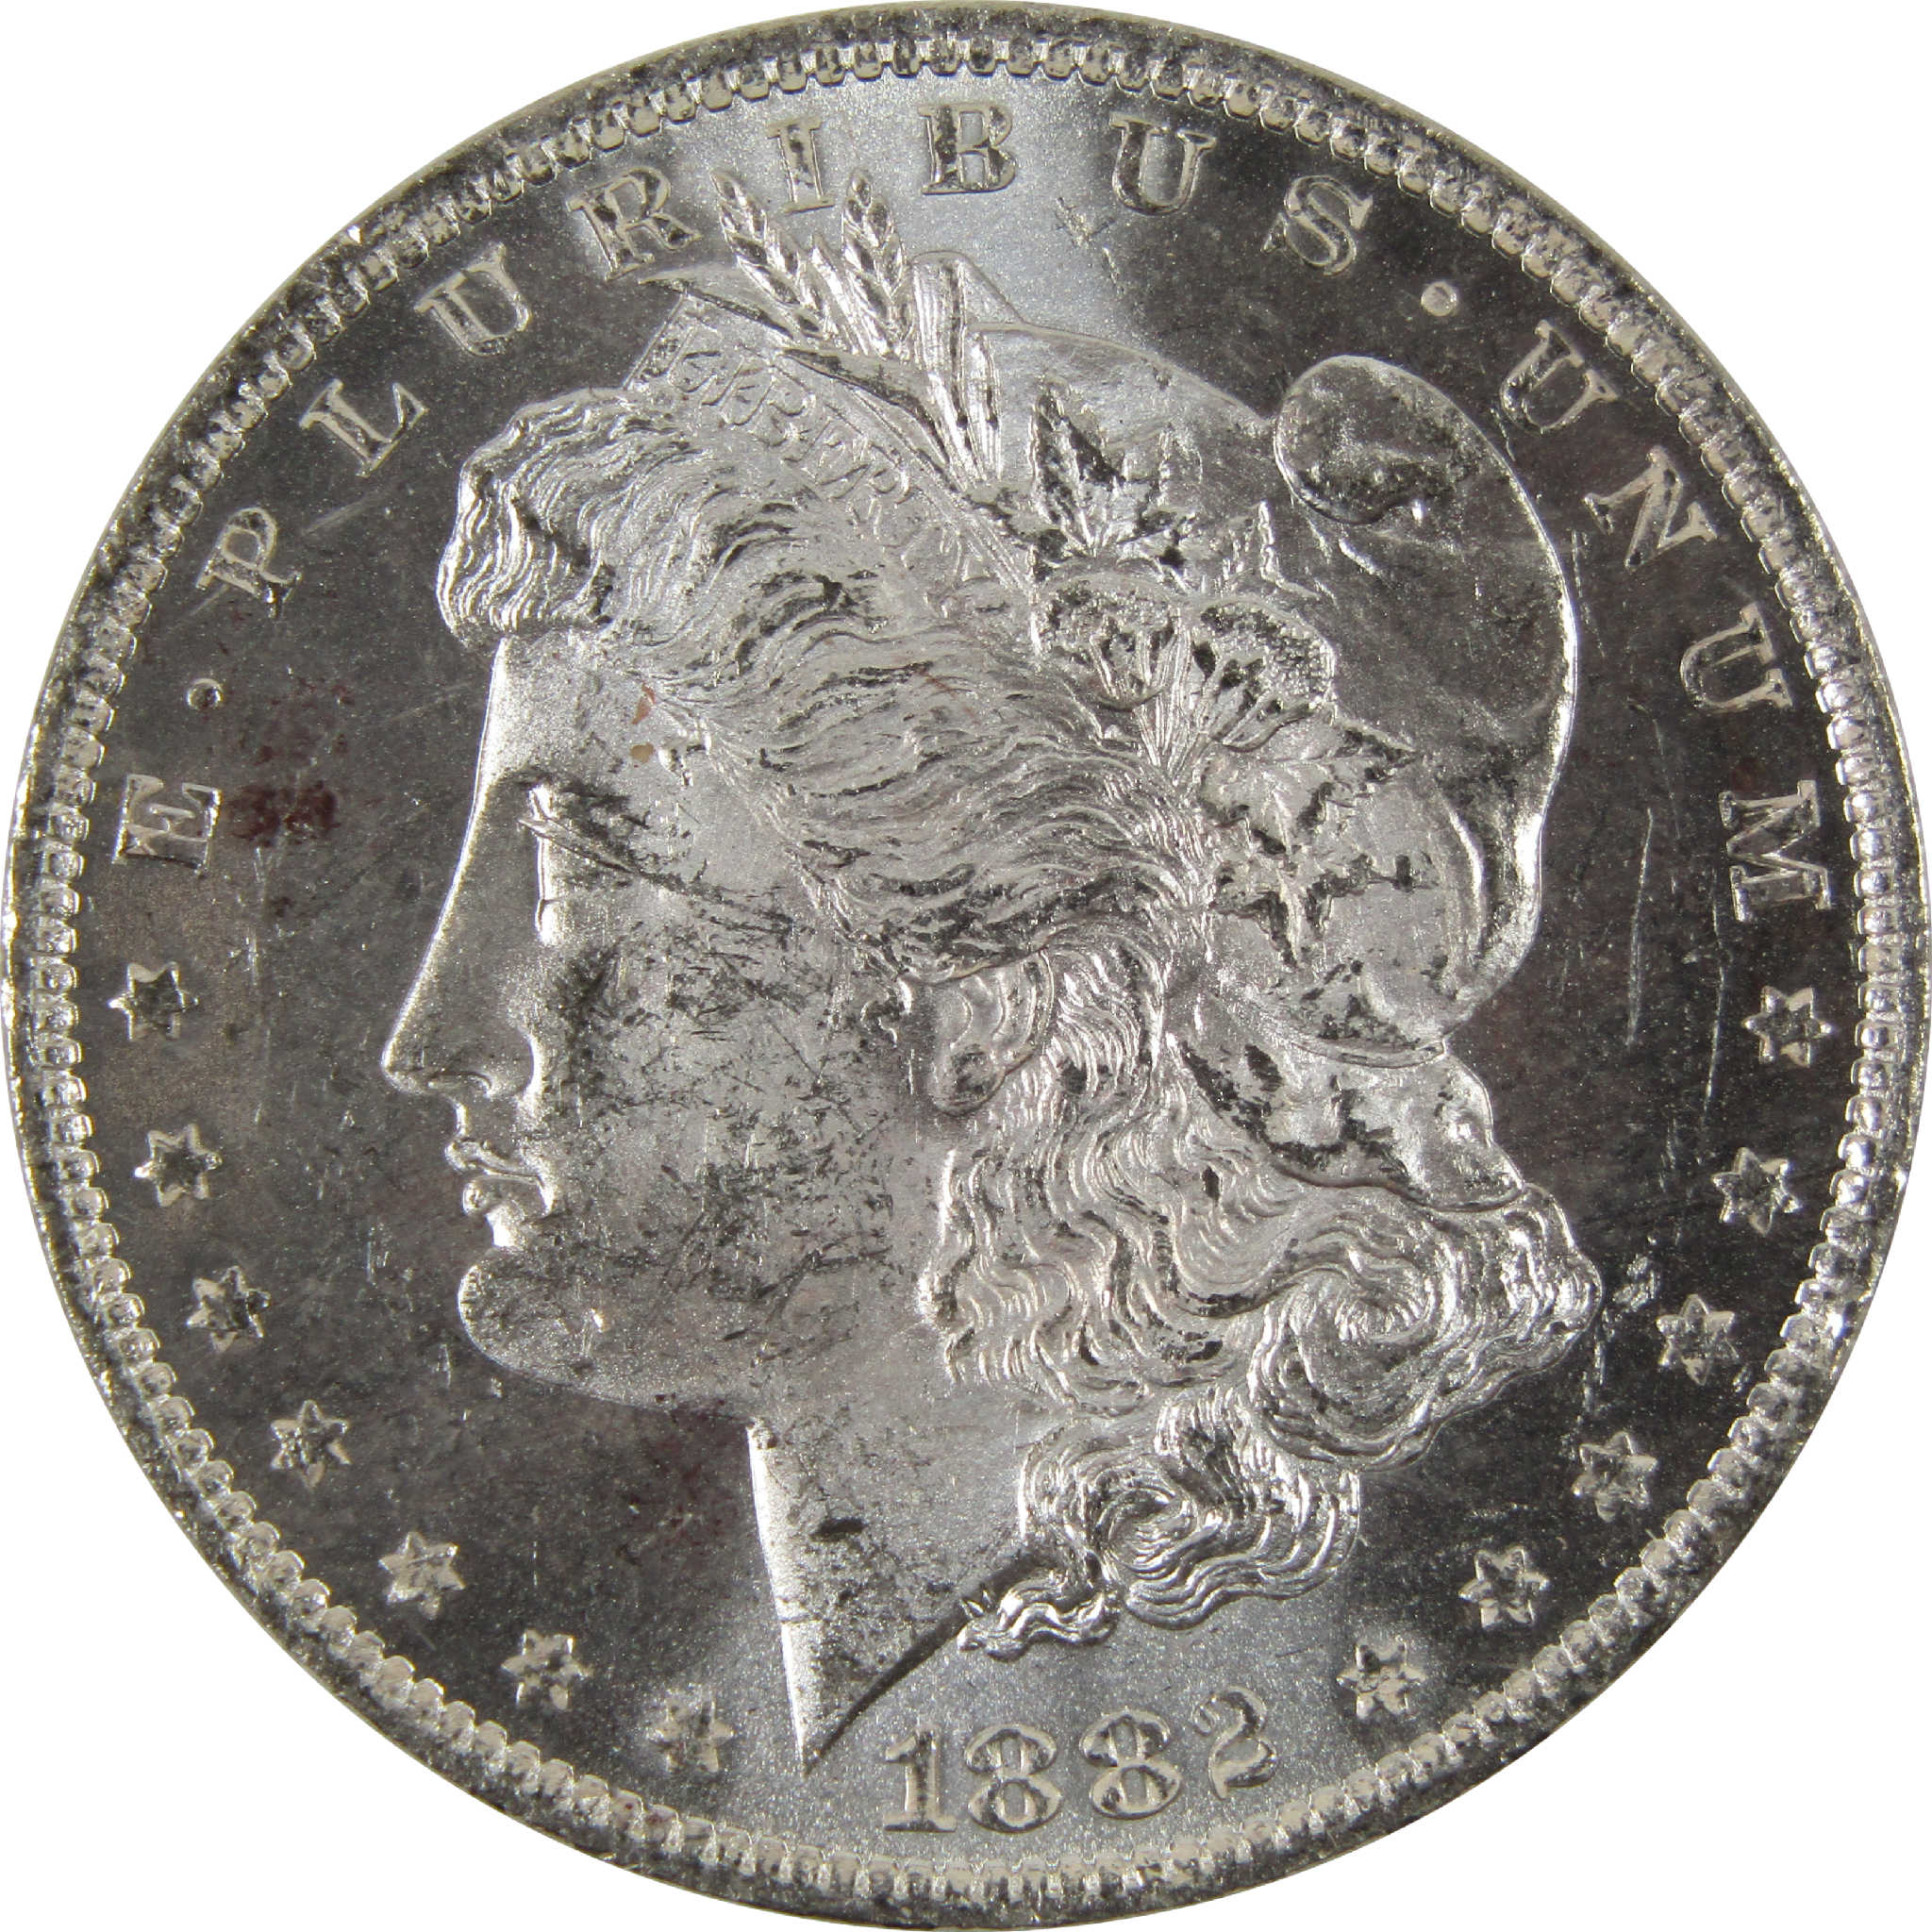 1882 O Morgan Dollar BU Uncirculated 90% Silver $1 Coin SKU:I8897 - Morgan coin - Morgan silver dollar - Morgan silver dollar for sale - Profile Coins &amp; Collectibles